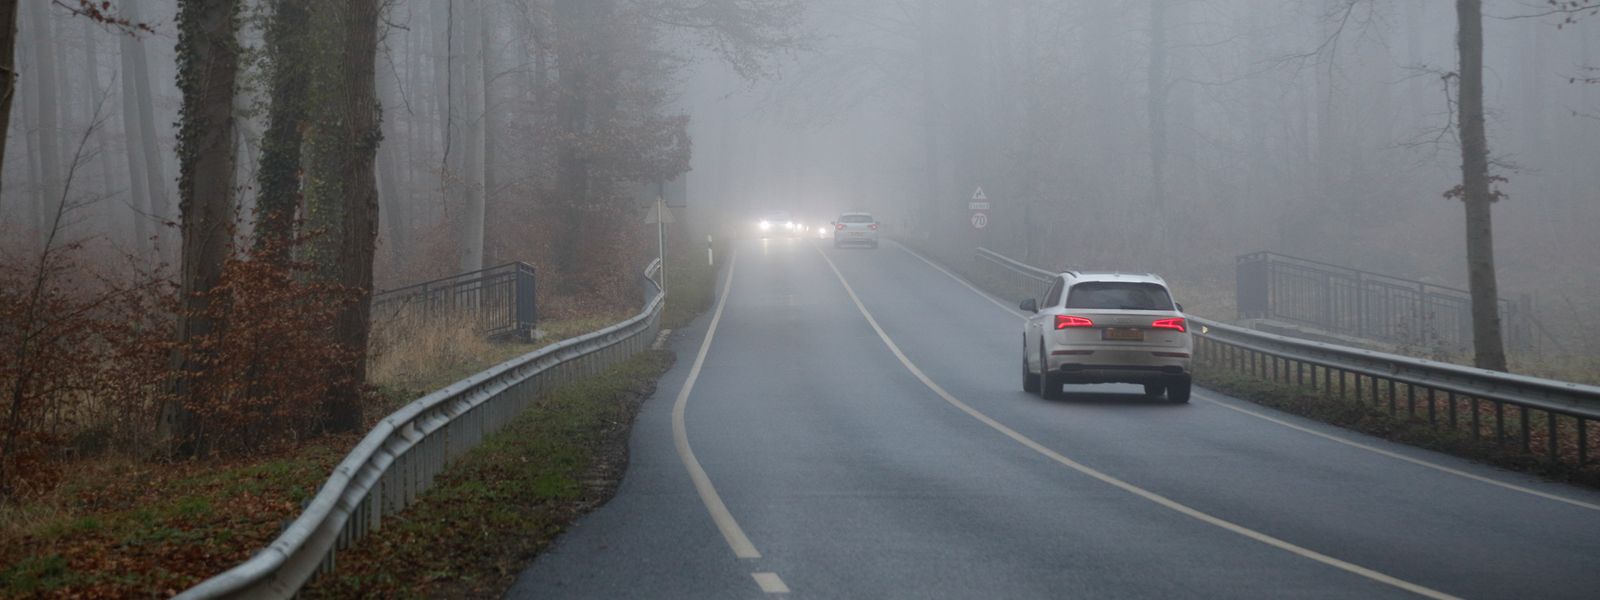 Bei starkem Nebel sollen die Nebelscheinwerfer eingeschaltet werden. So wird man schneller von anderen Verkehrsteilnehmer wahrgenommen.